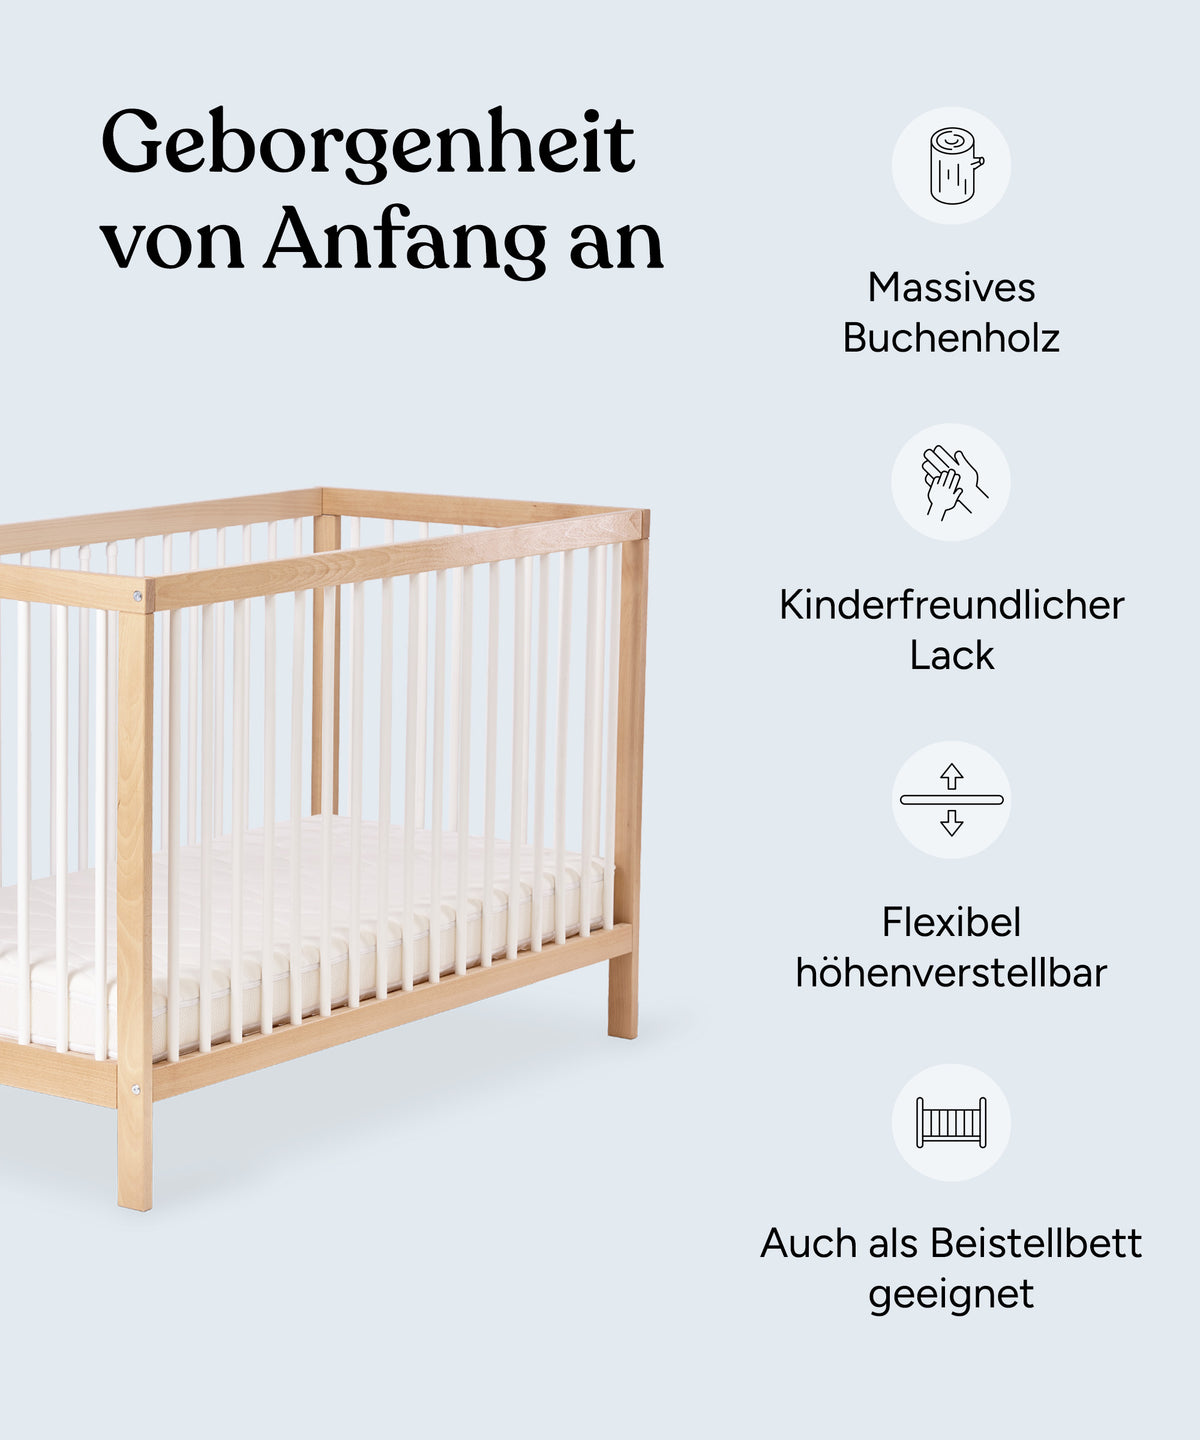 Geborgenheit von Anfang an. Vorteile des Babybetts: Massives Buchenholz, kinderfreundlicher Lack, flexibel höhenverstellbar, auch als Beistellbett geeignet.